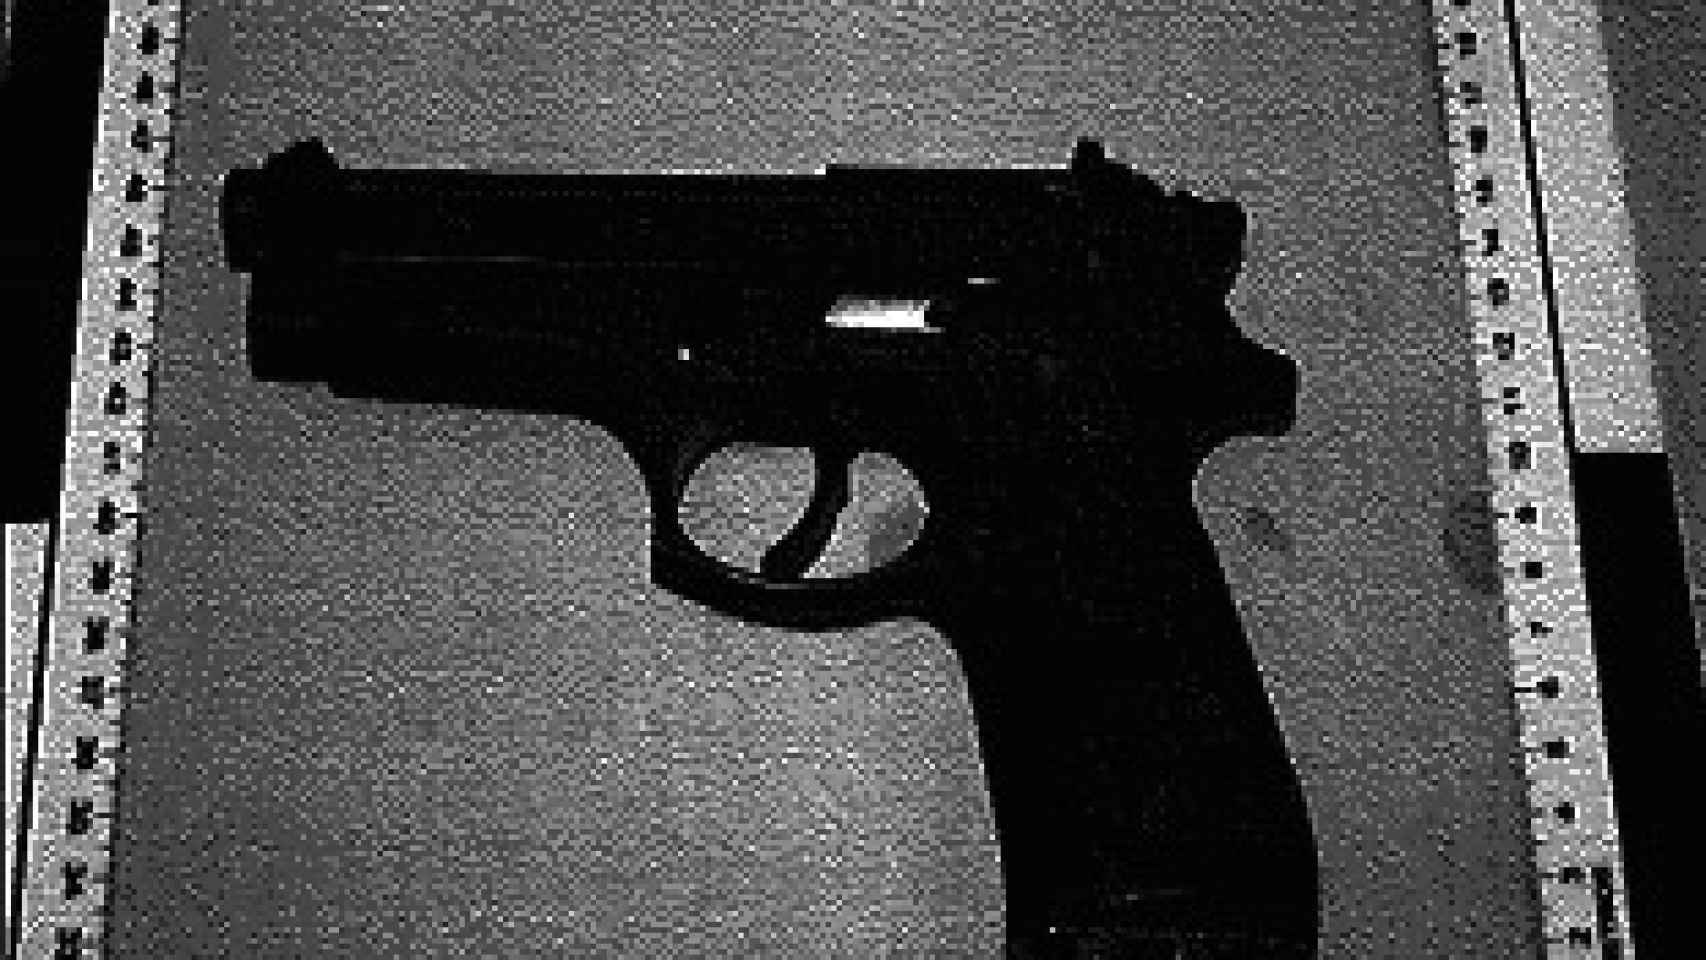 Pistola marca Beretta de la Guardia Civil.